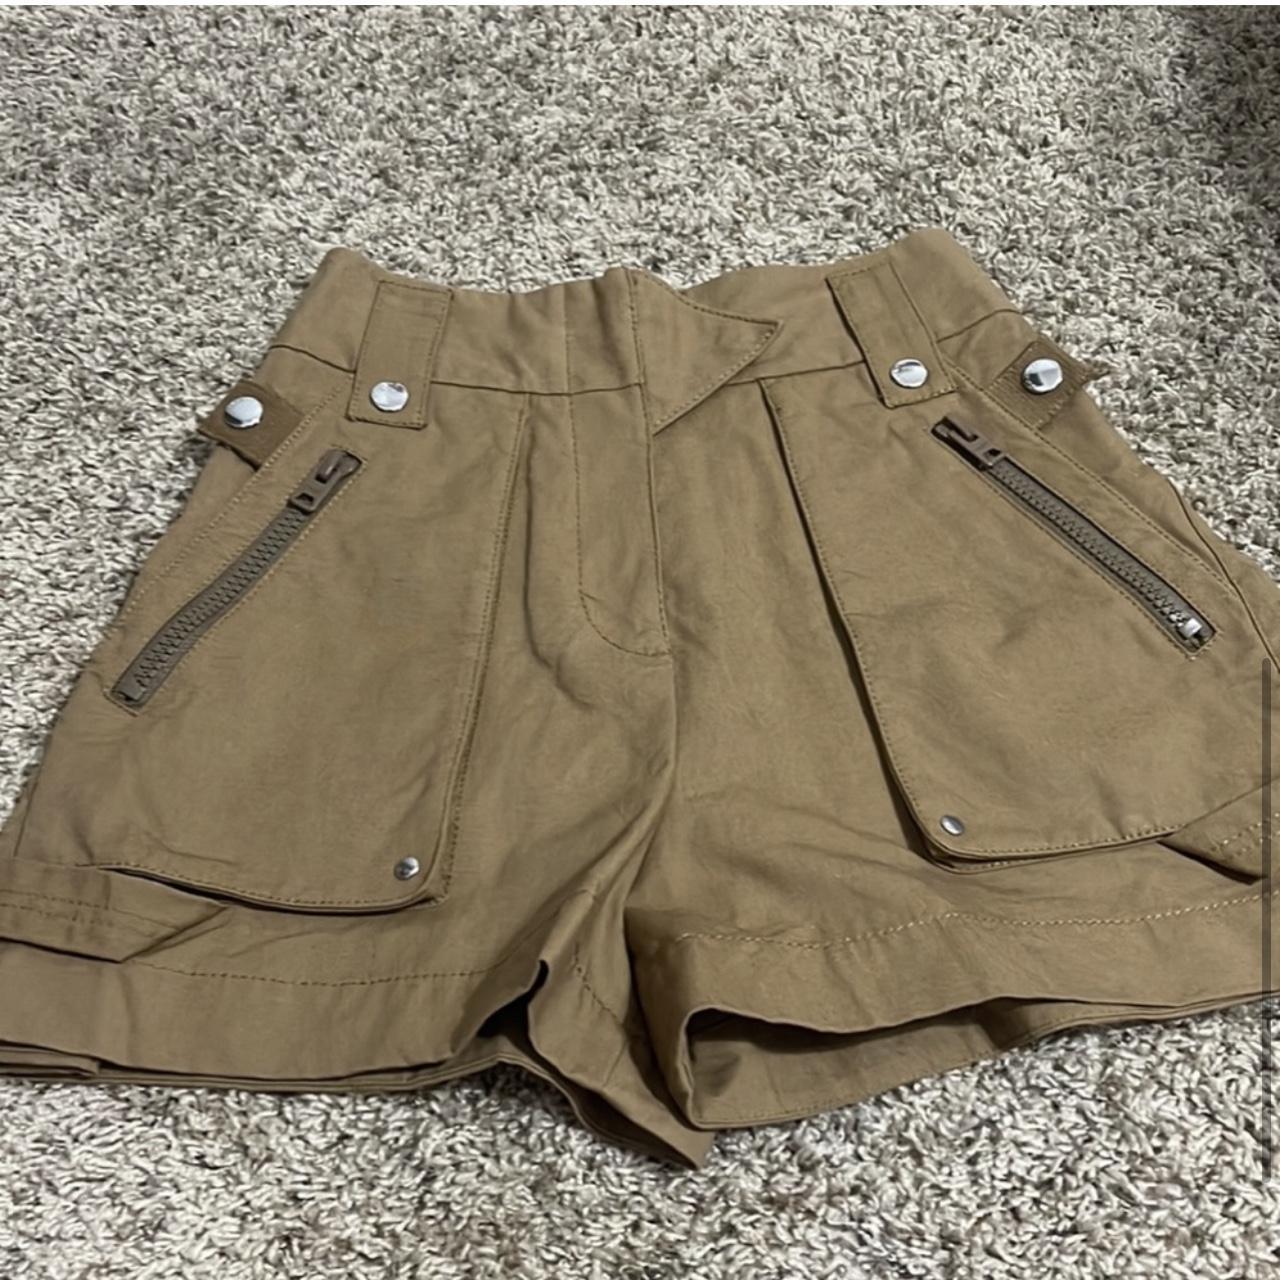 COACH®  Pocket Shorts